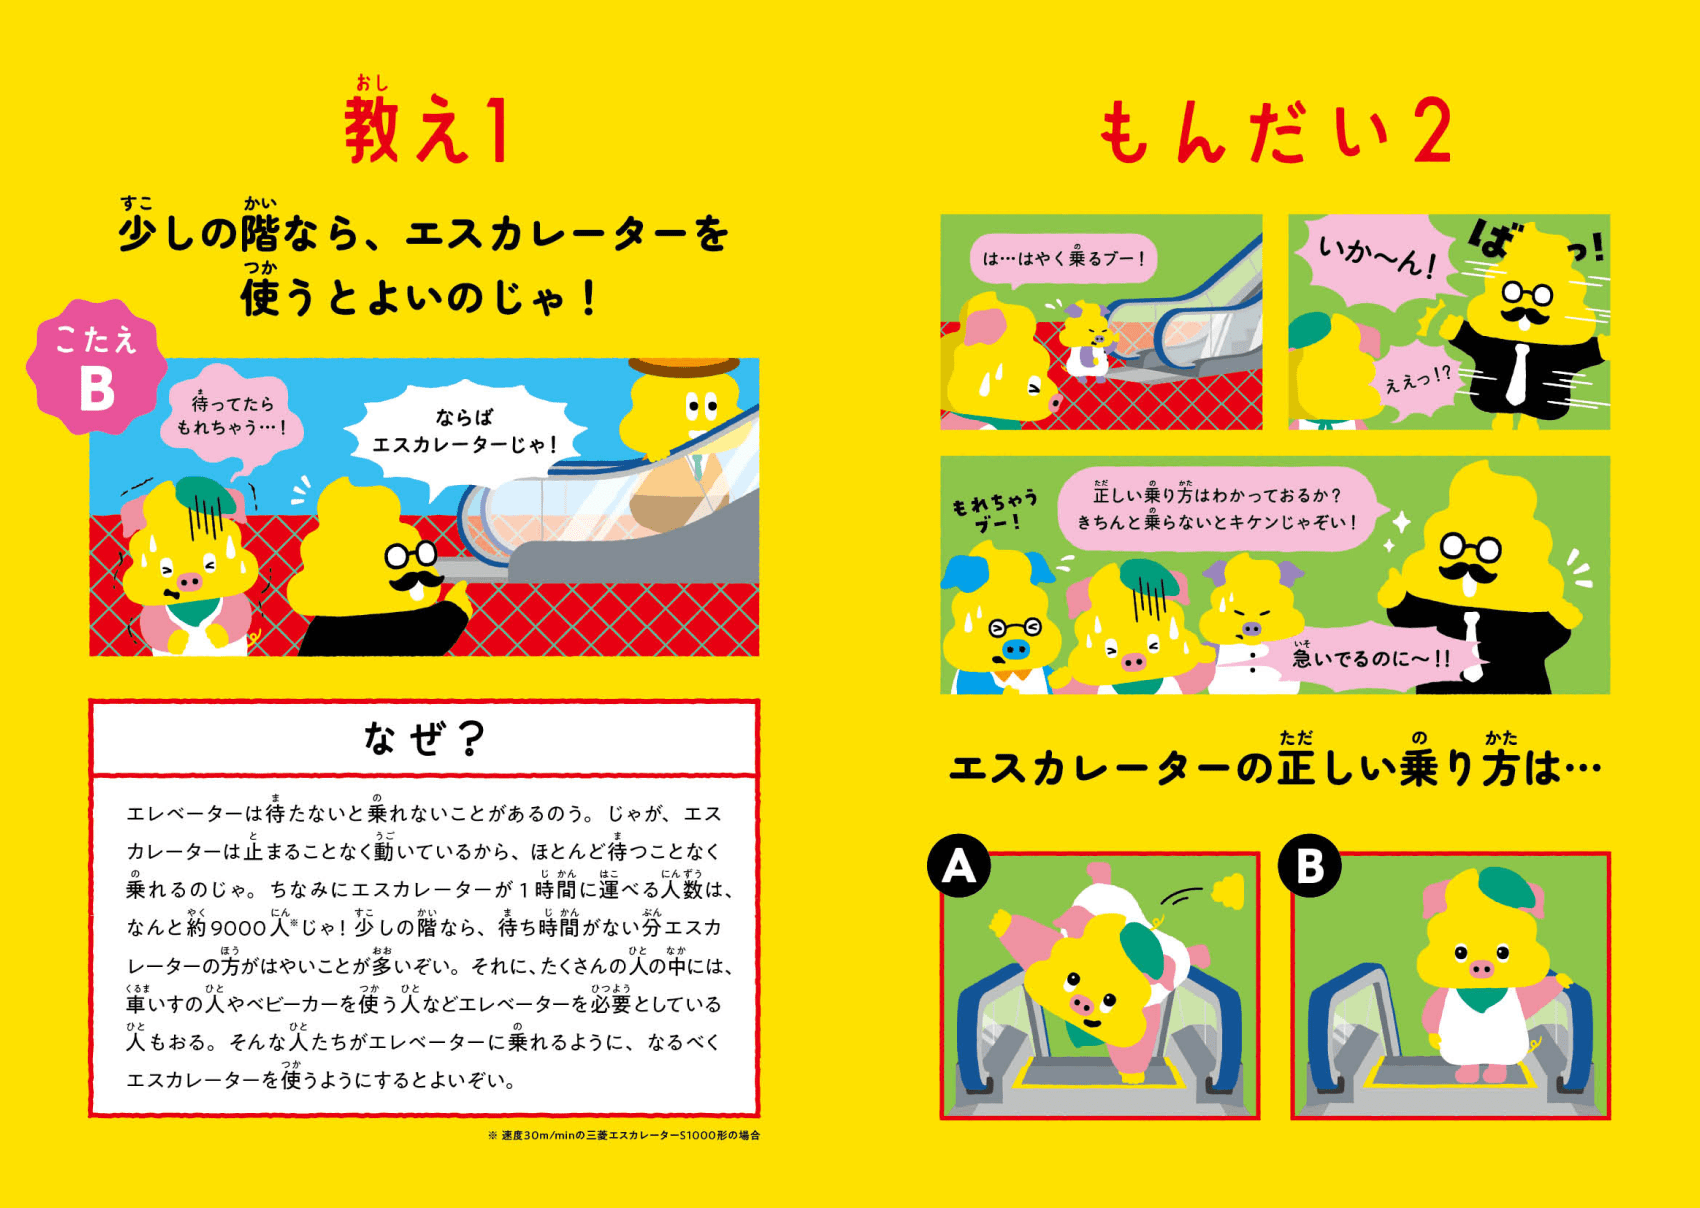 日本一楽しい安全ドリル エスカレーター編3